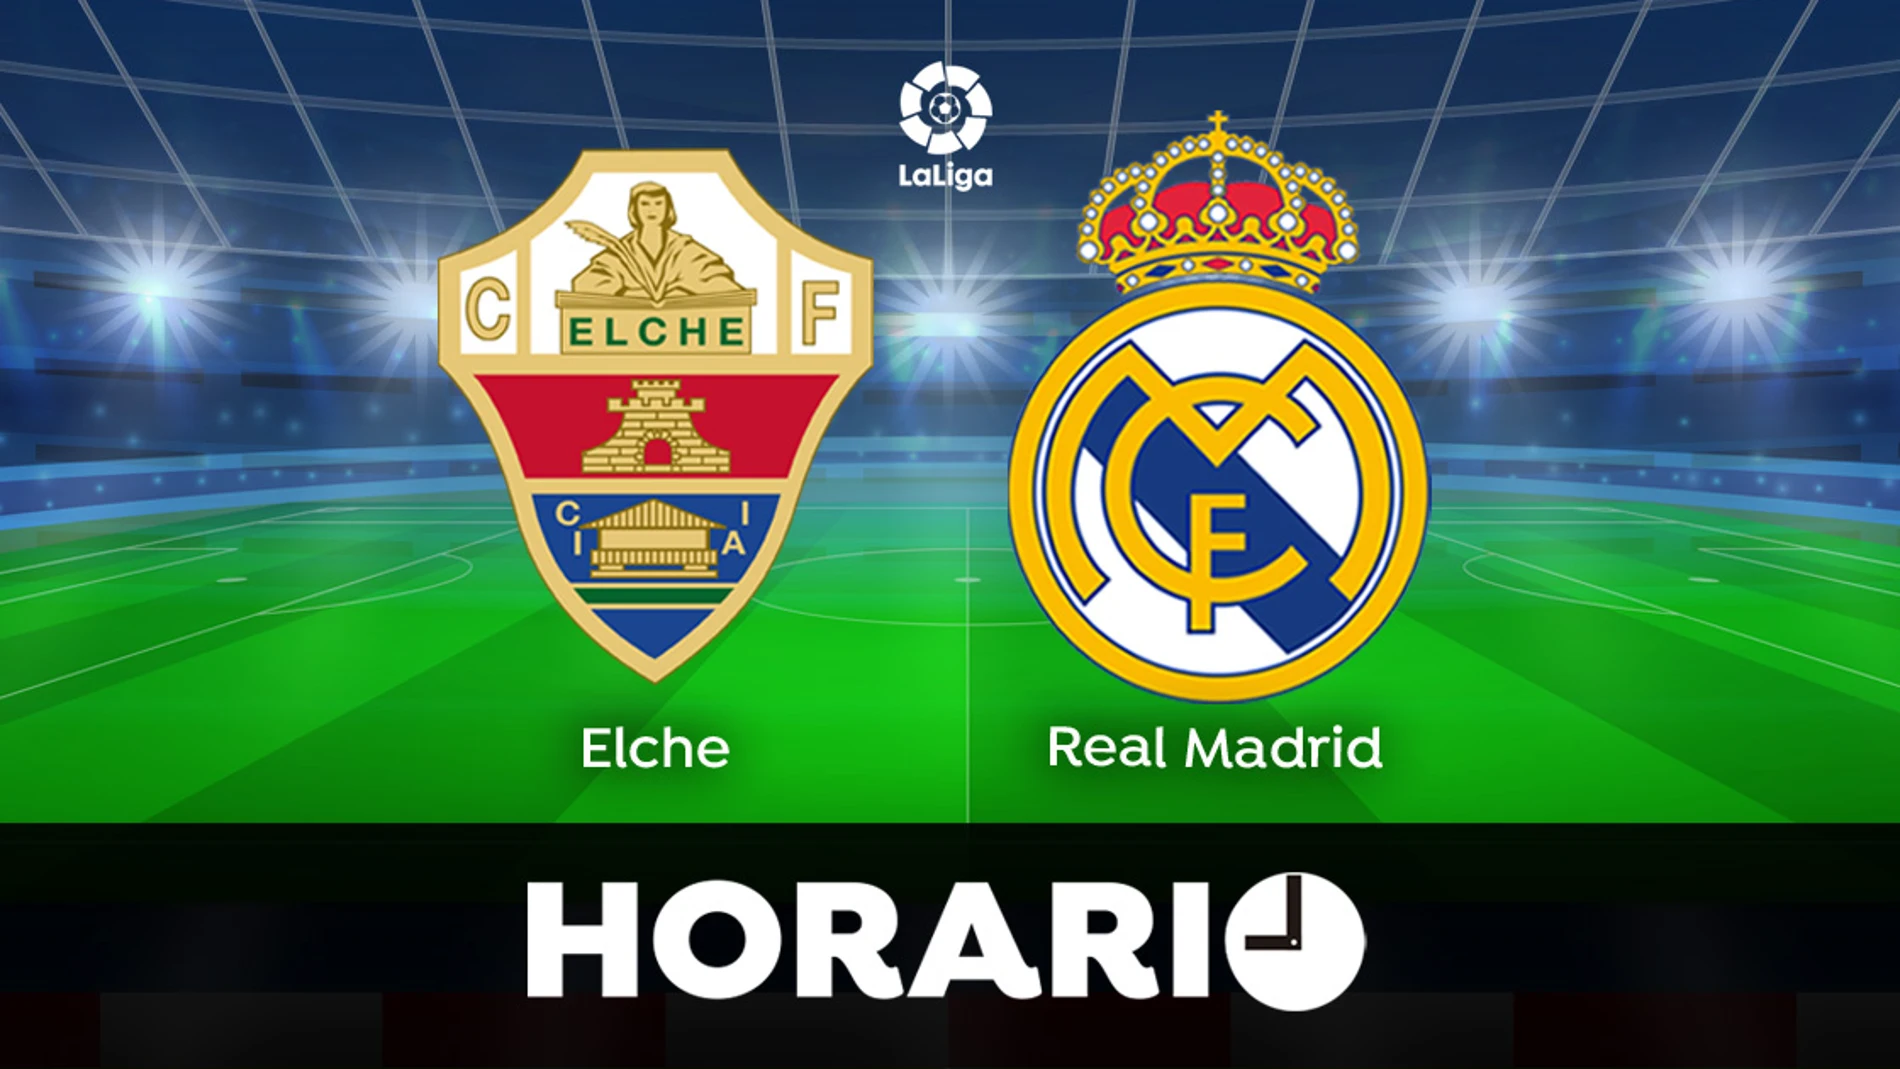 Elche - Real Madrid: Horario y ver el partido de Liga en directo